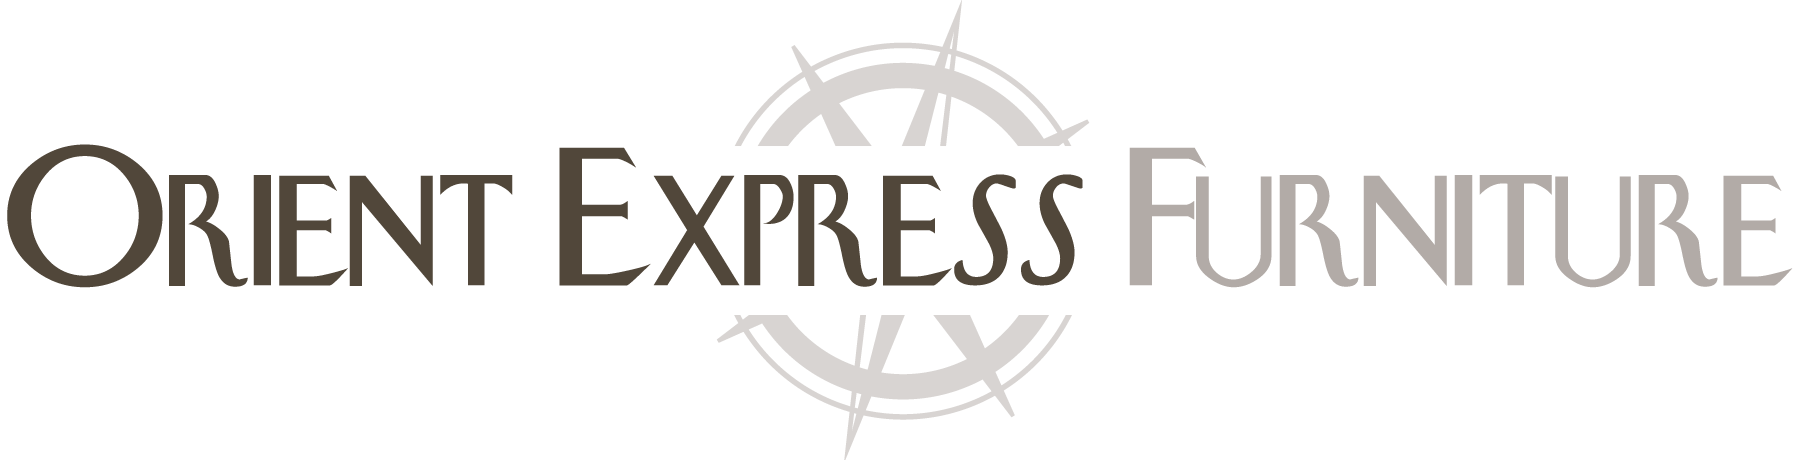 Express Brand Logo - Orient Express Furniture